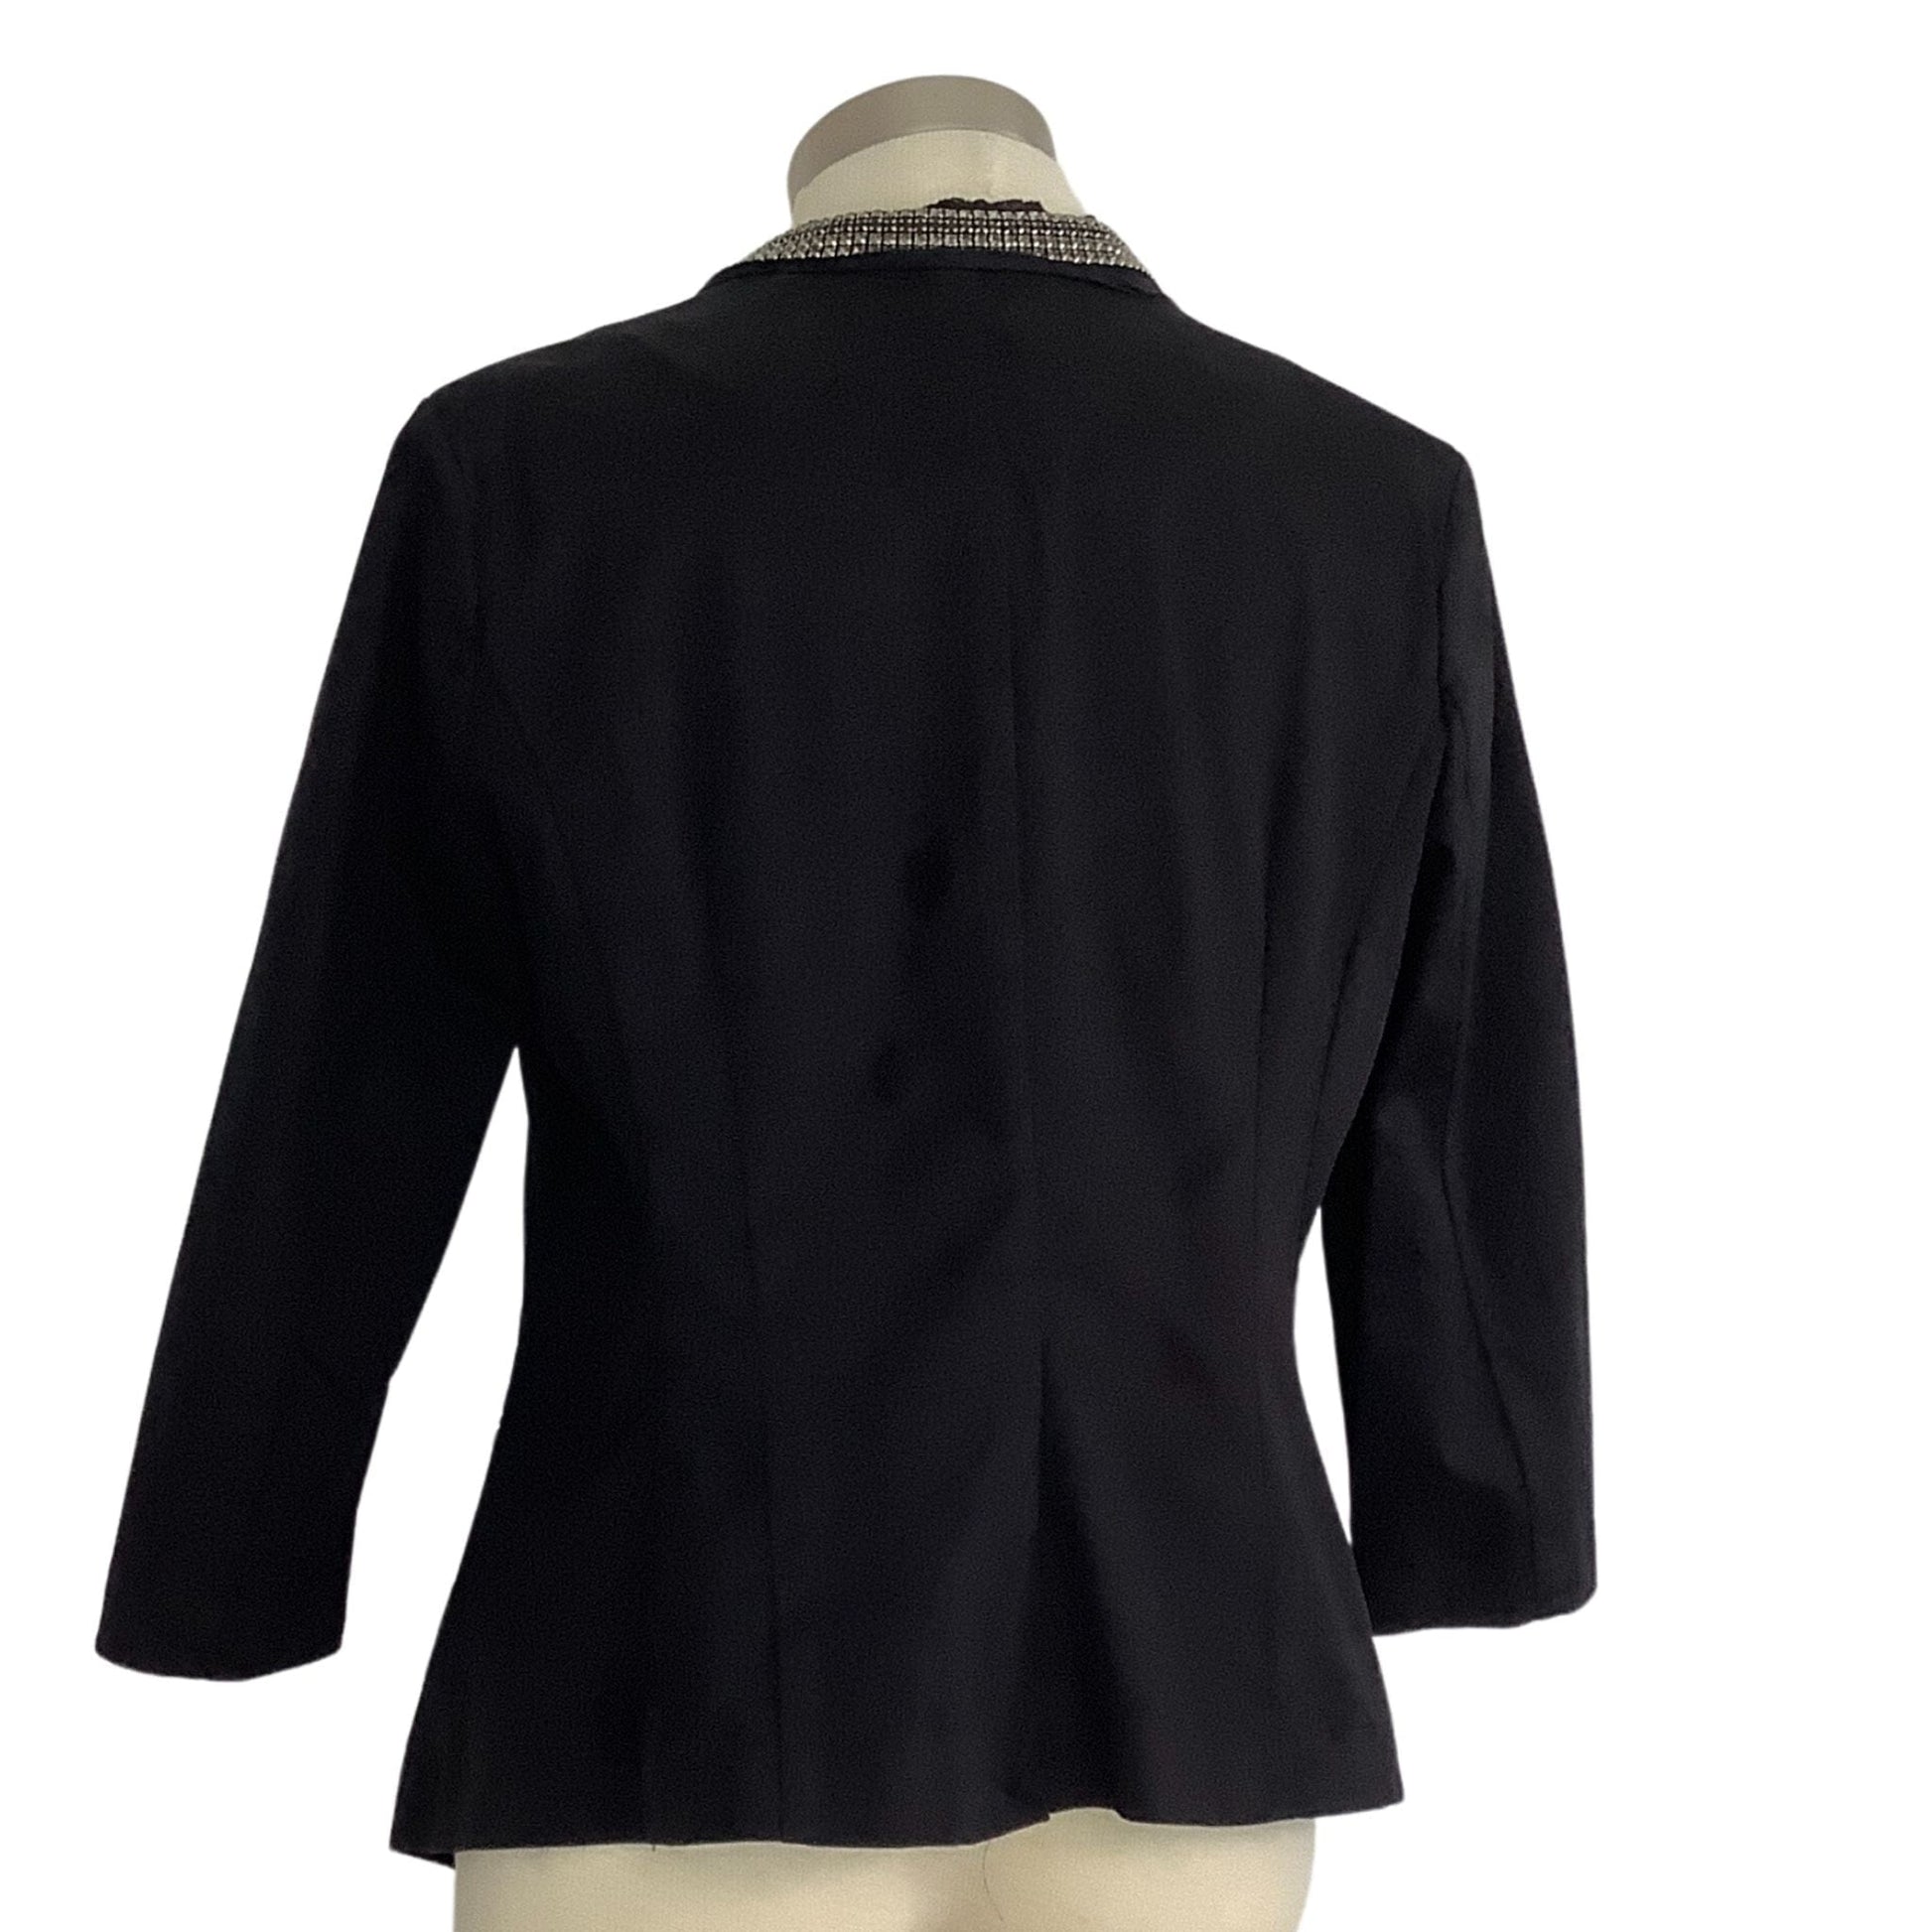 Rhinestone Embellished Jacket